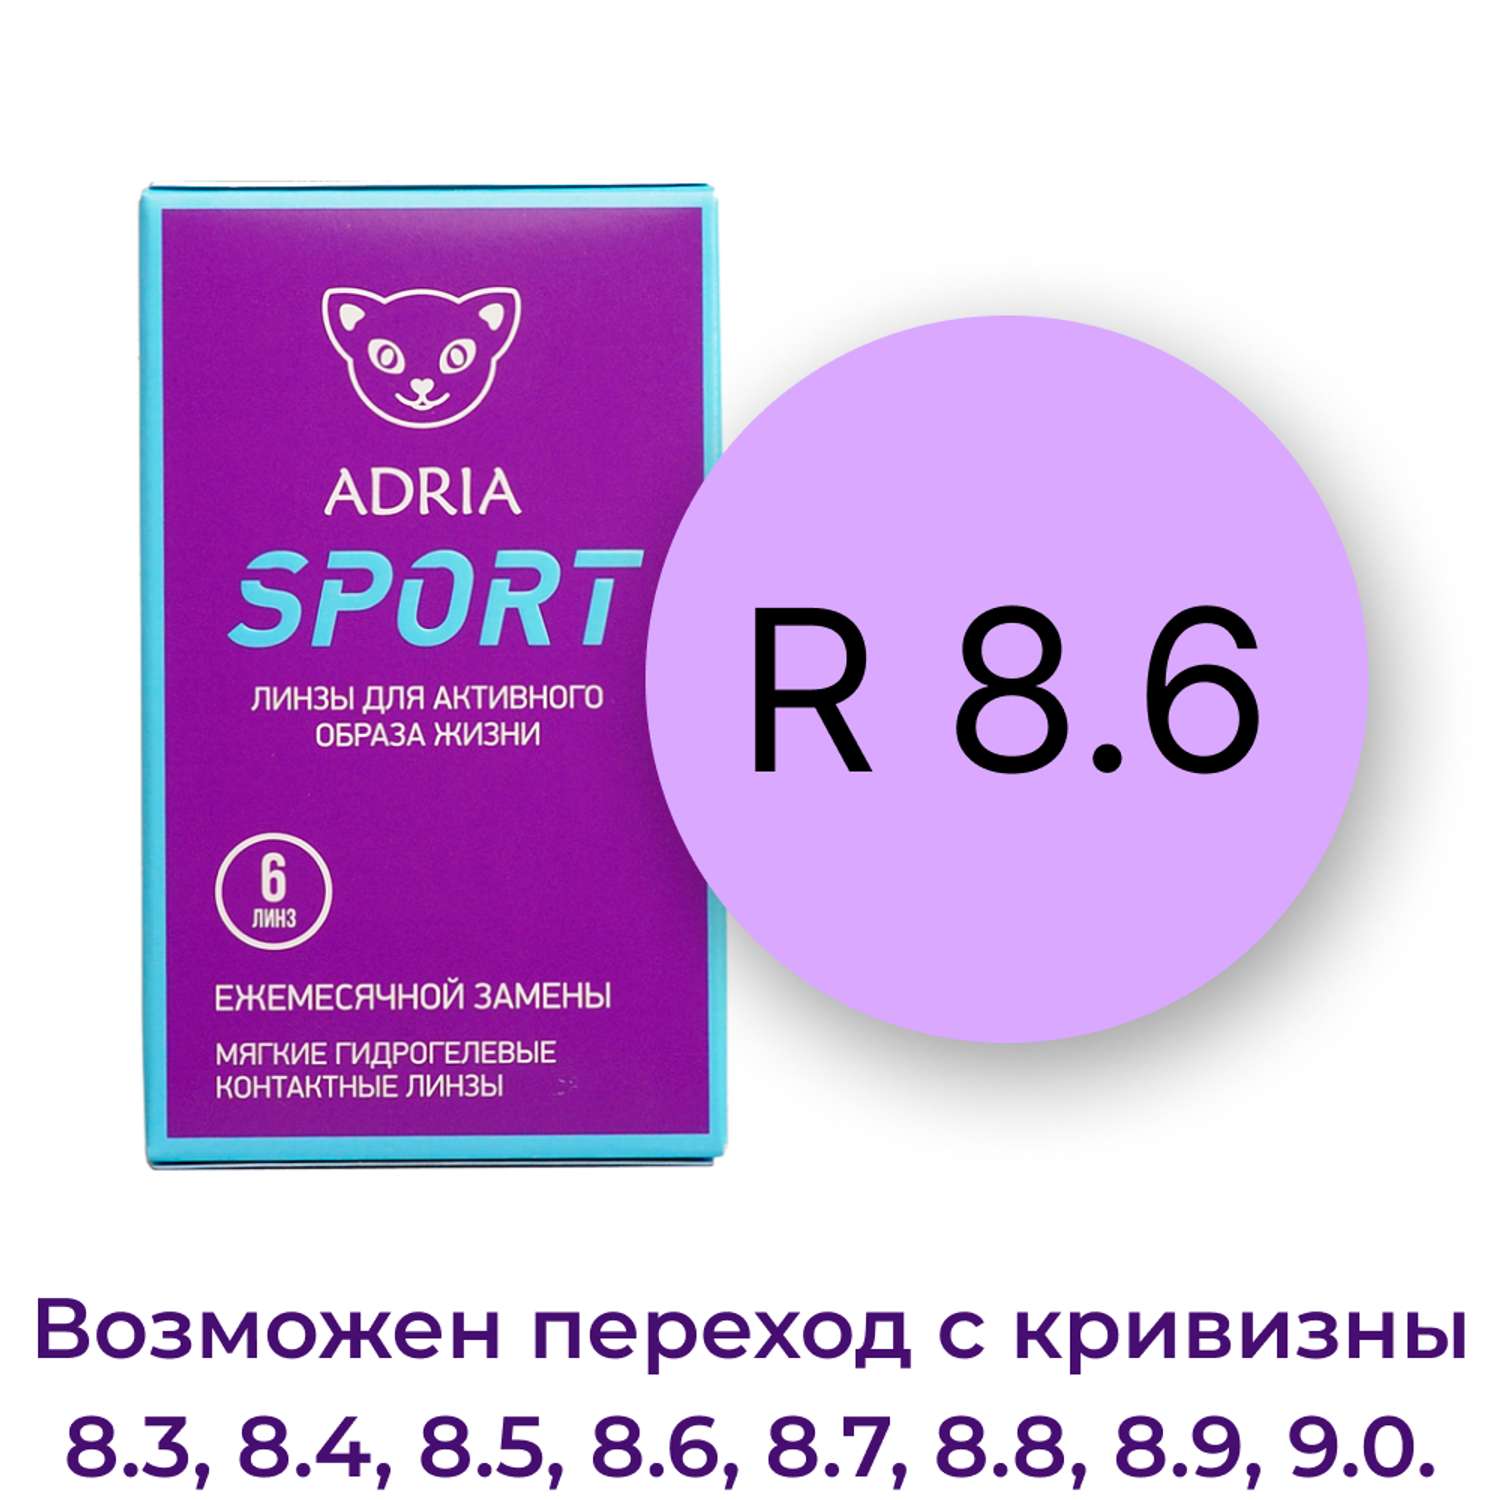 Контактные линзы ADRIA Sport 6 линз R 8.6 -3.75 - фото 3